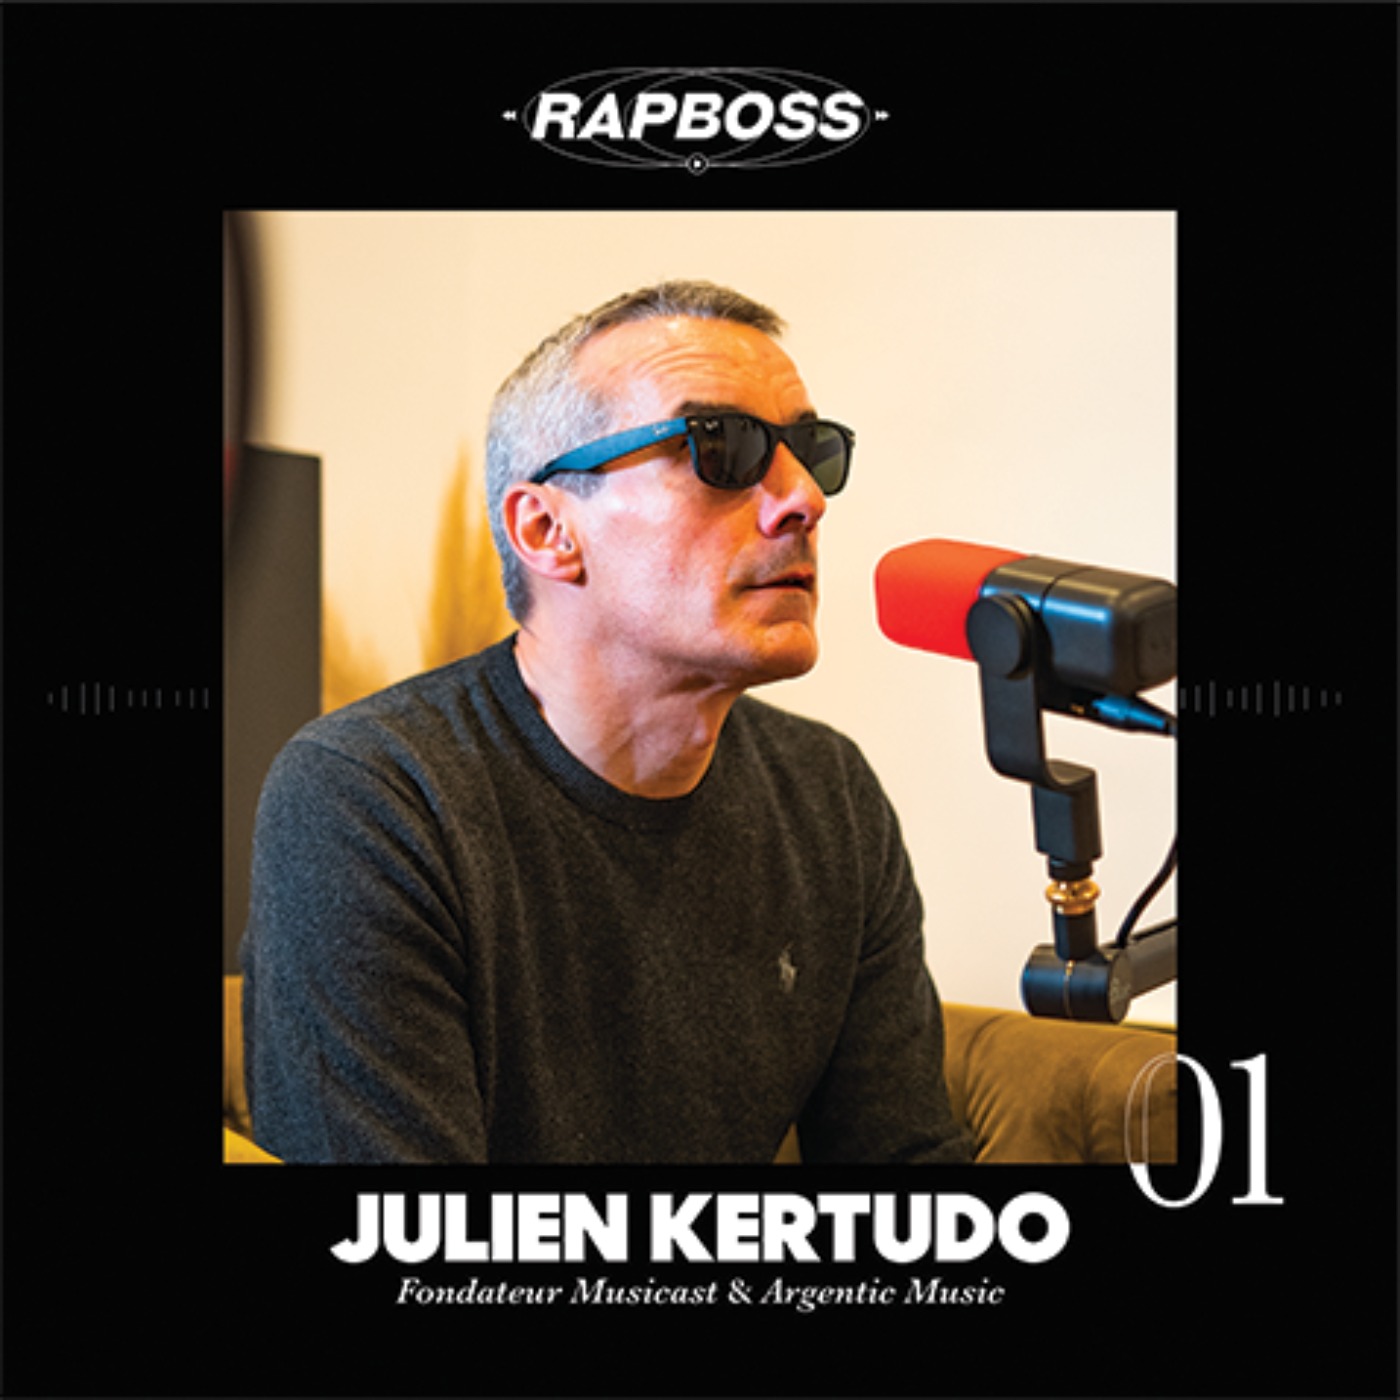 #01 Julien Kertudo - Créer Musicast, signer JUL et PNL, vendre à Believe puis s'associer à Universal